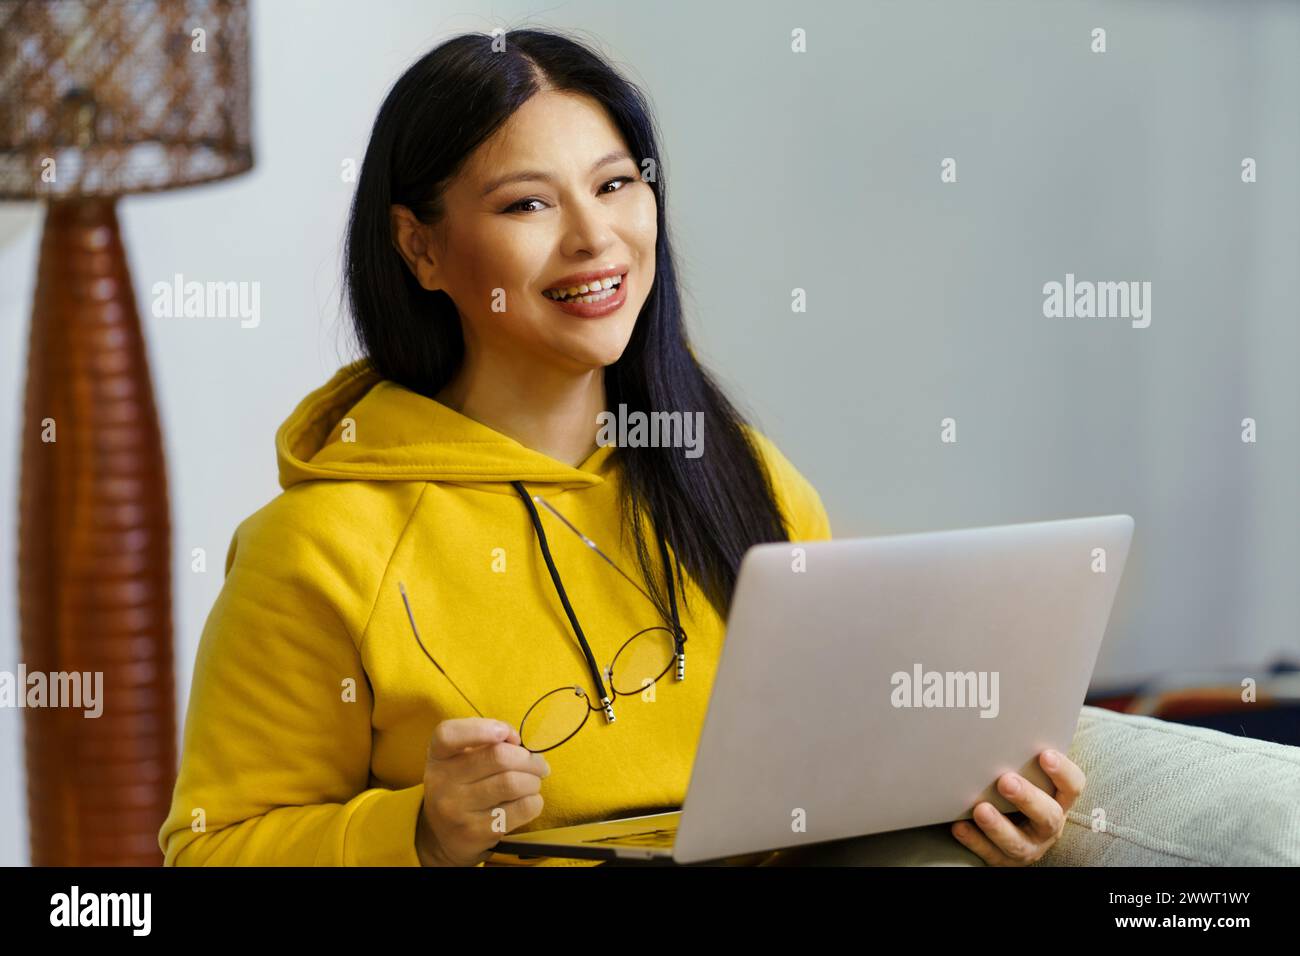 Une femme dans un sweat à capuche jaune sourit et tient un ordinateur portable. Elle porte des lunettes et profite de son temps Banque D'Images